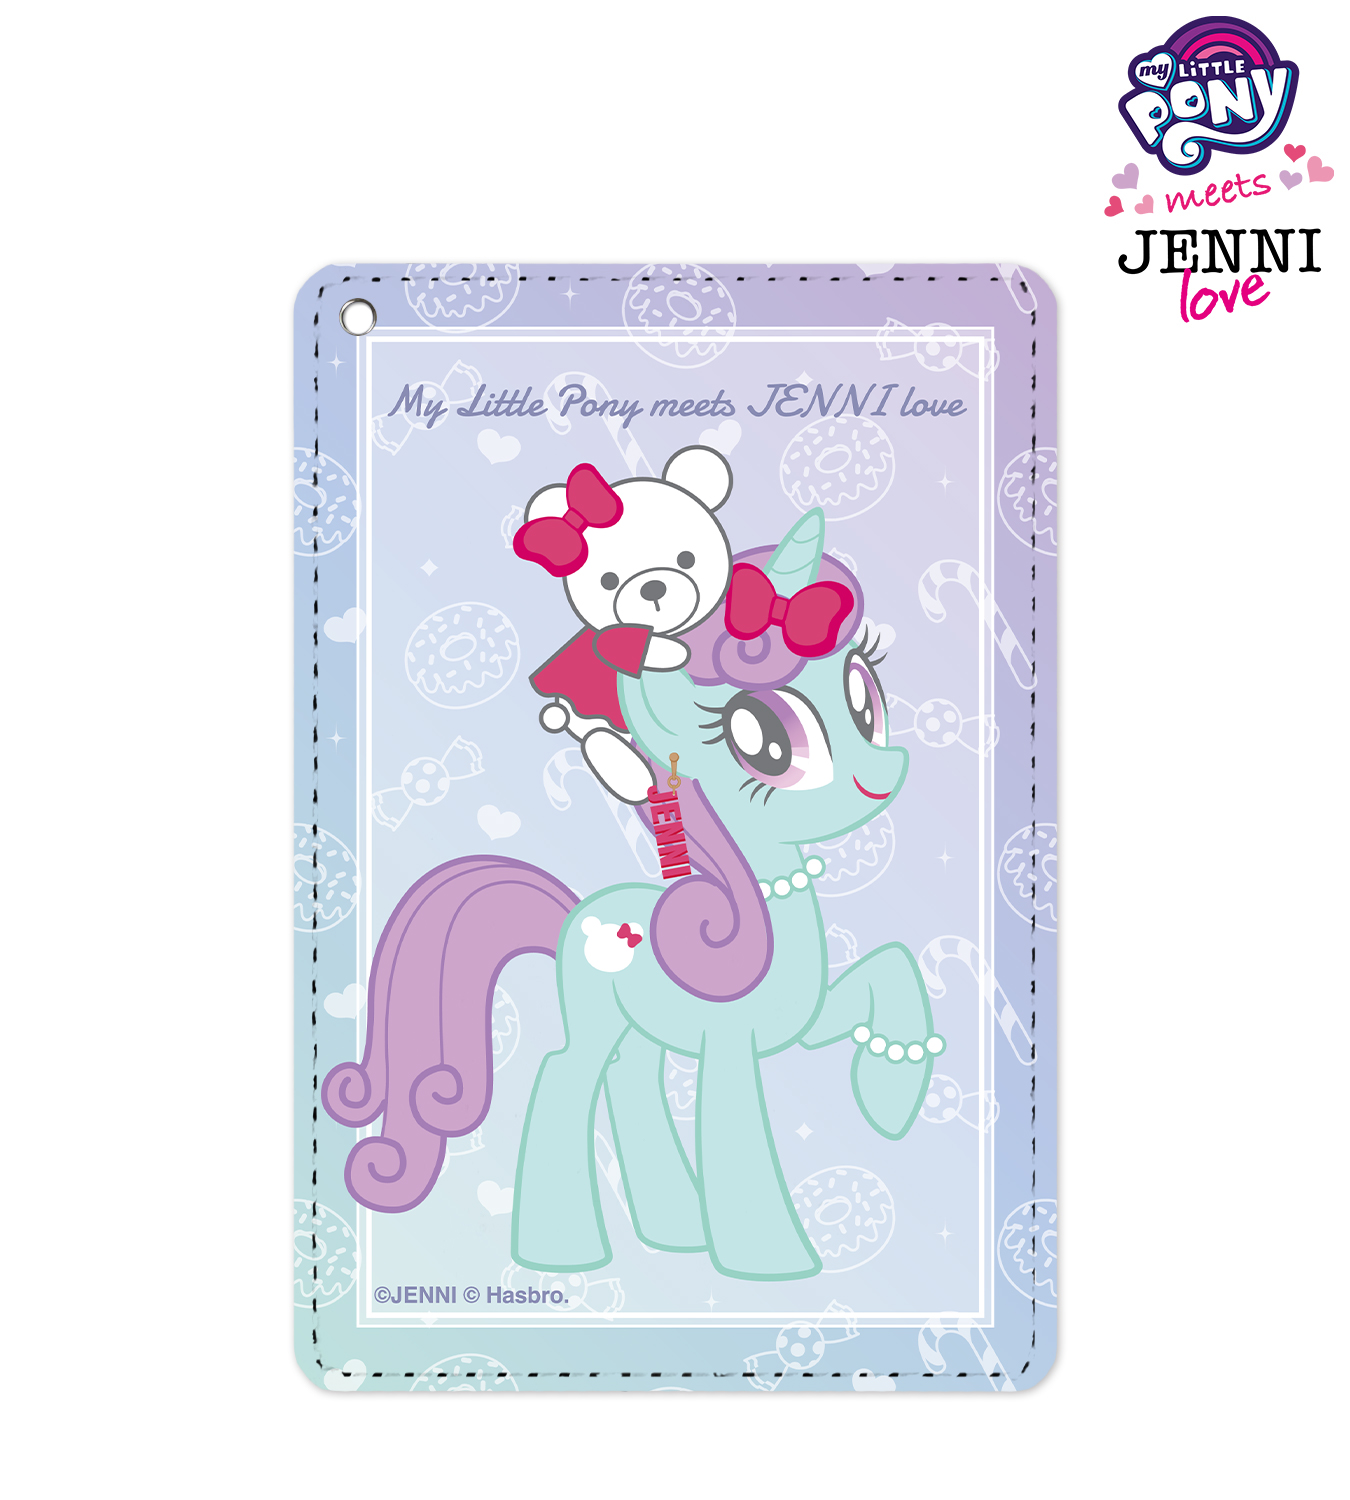 『My Little Pony meets JENNI love』のBIGアクリルスタンド、1ポケットパスケースの受注を開始！！アニメ・漫画のオリジナルグッズを販売する「AMNIBUS」にてのサブ画像4